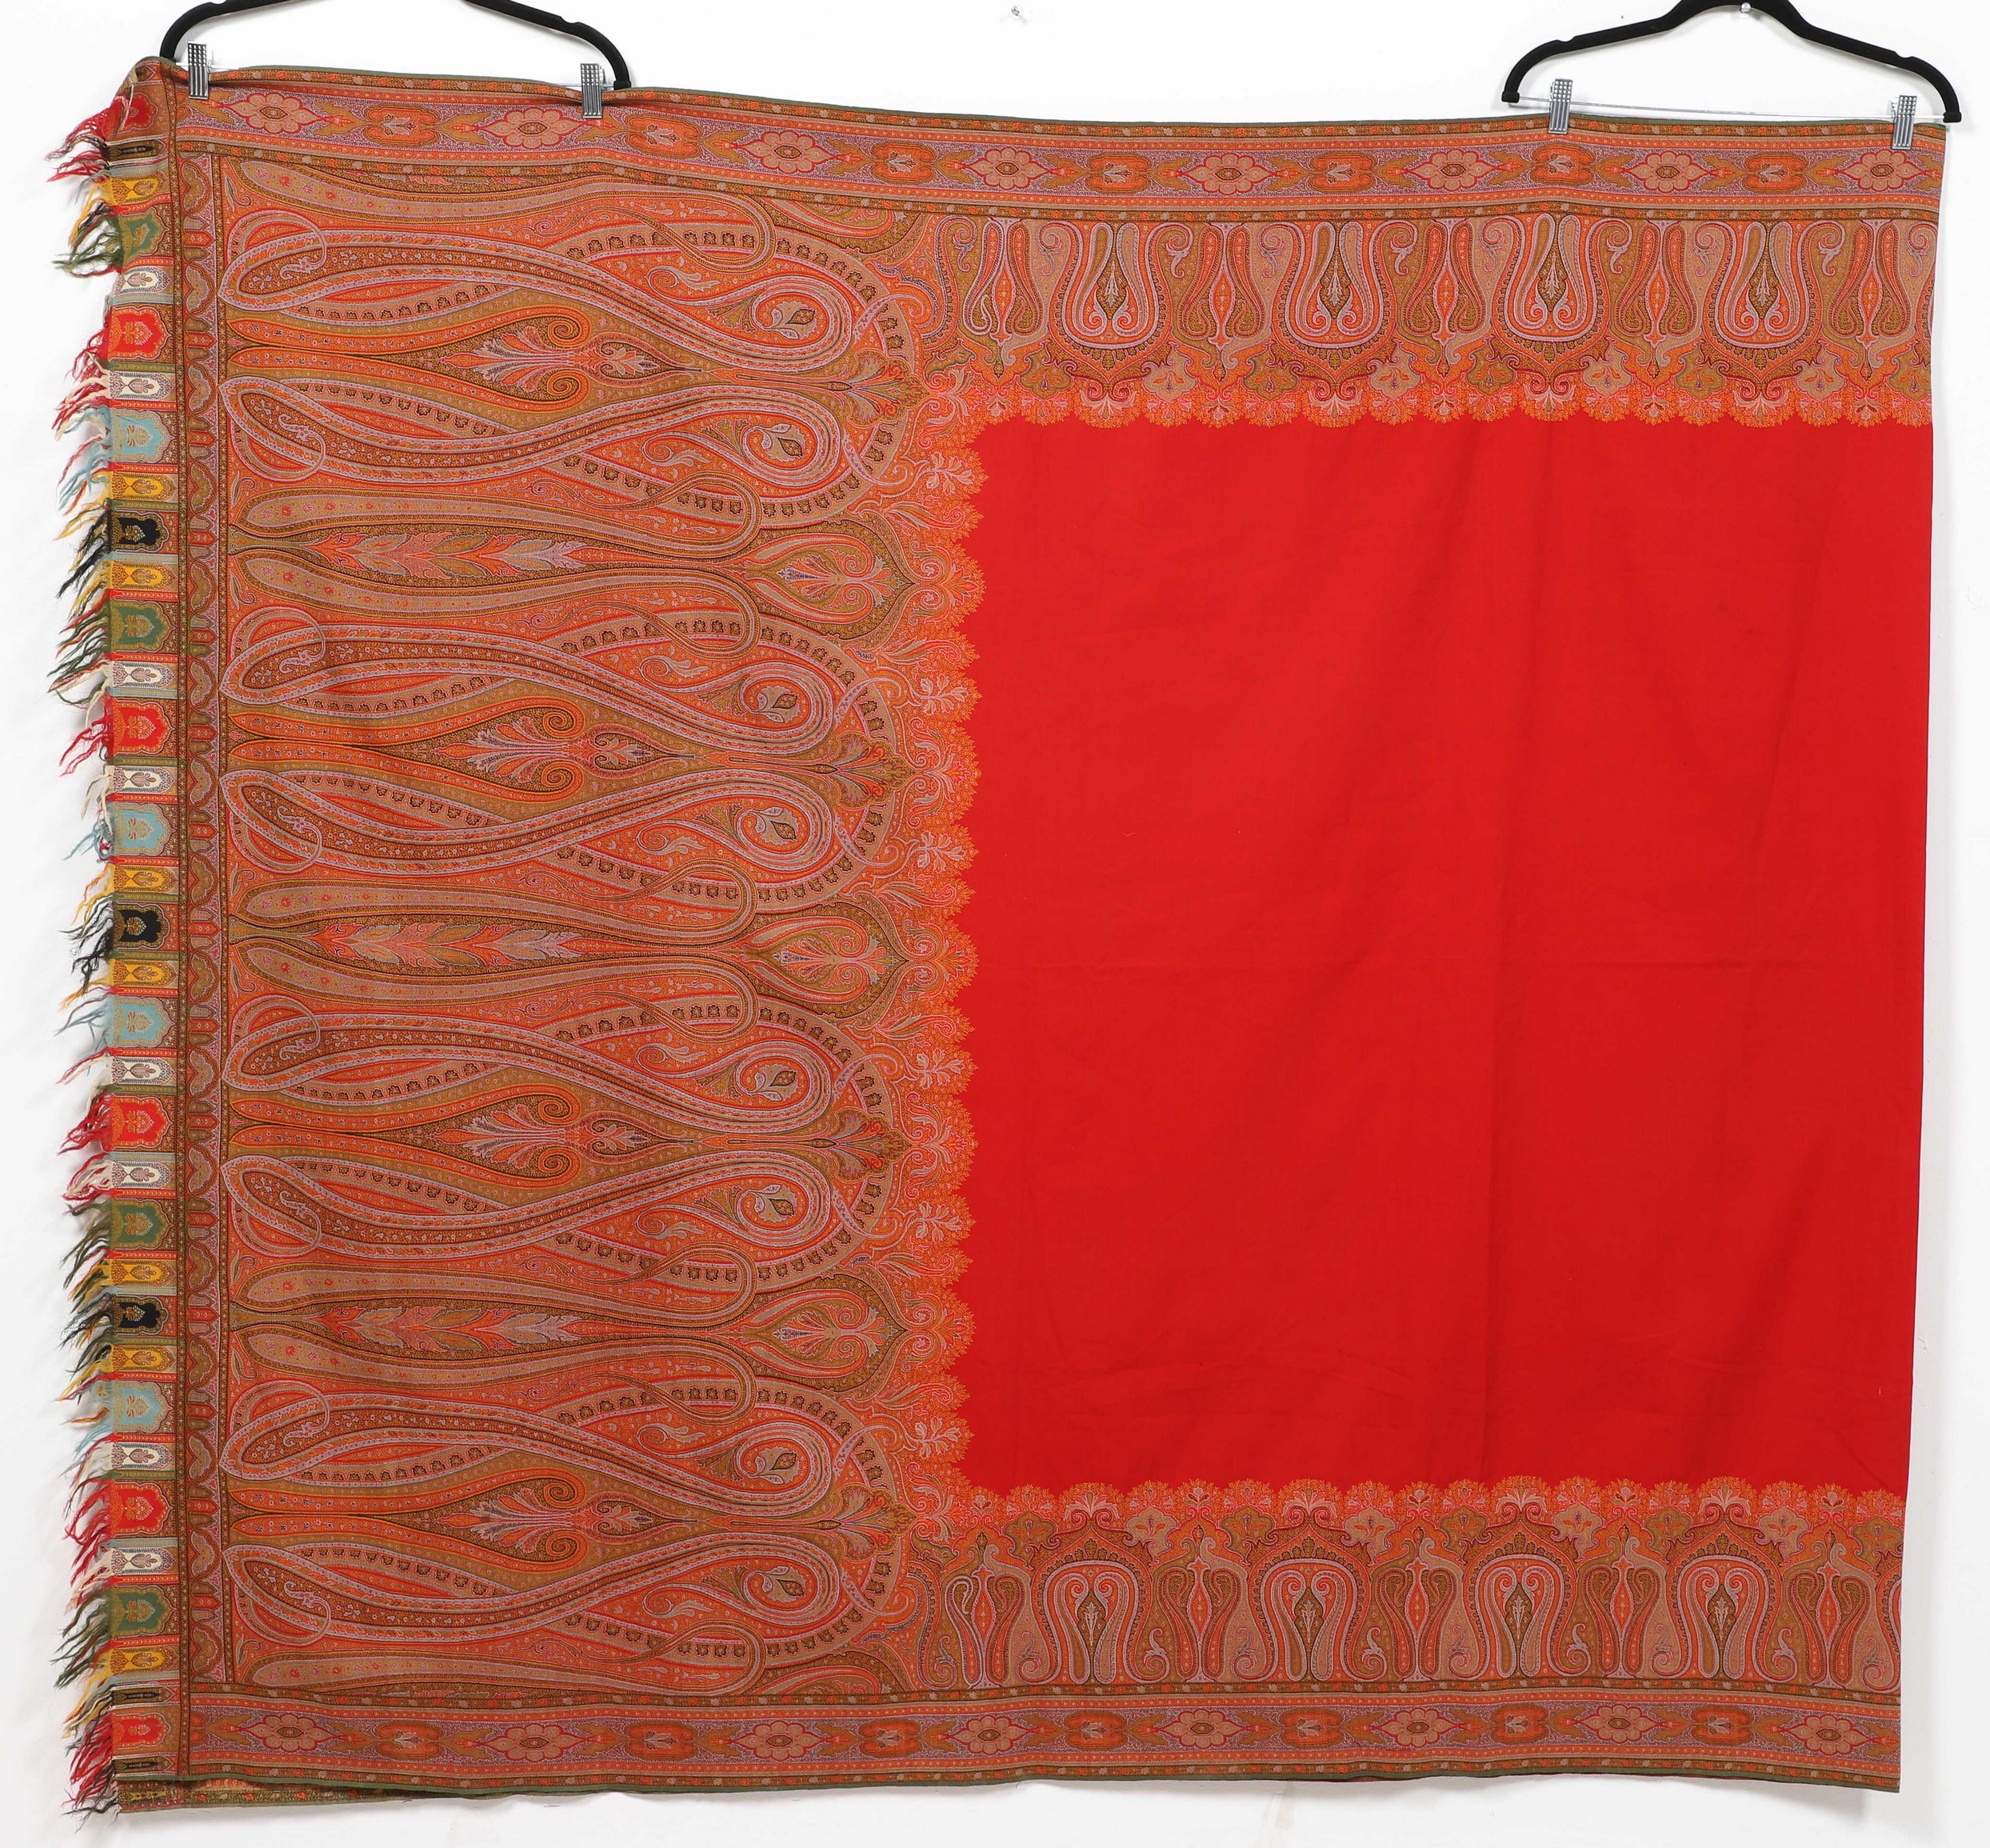 Kashmir shawl, paisley decoration, fringed